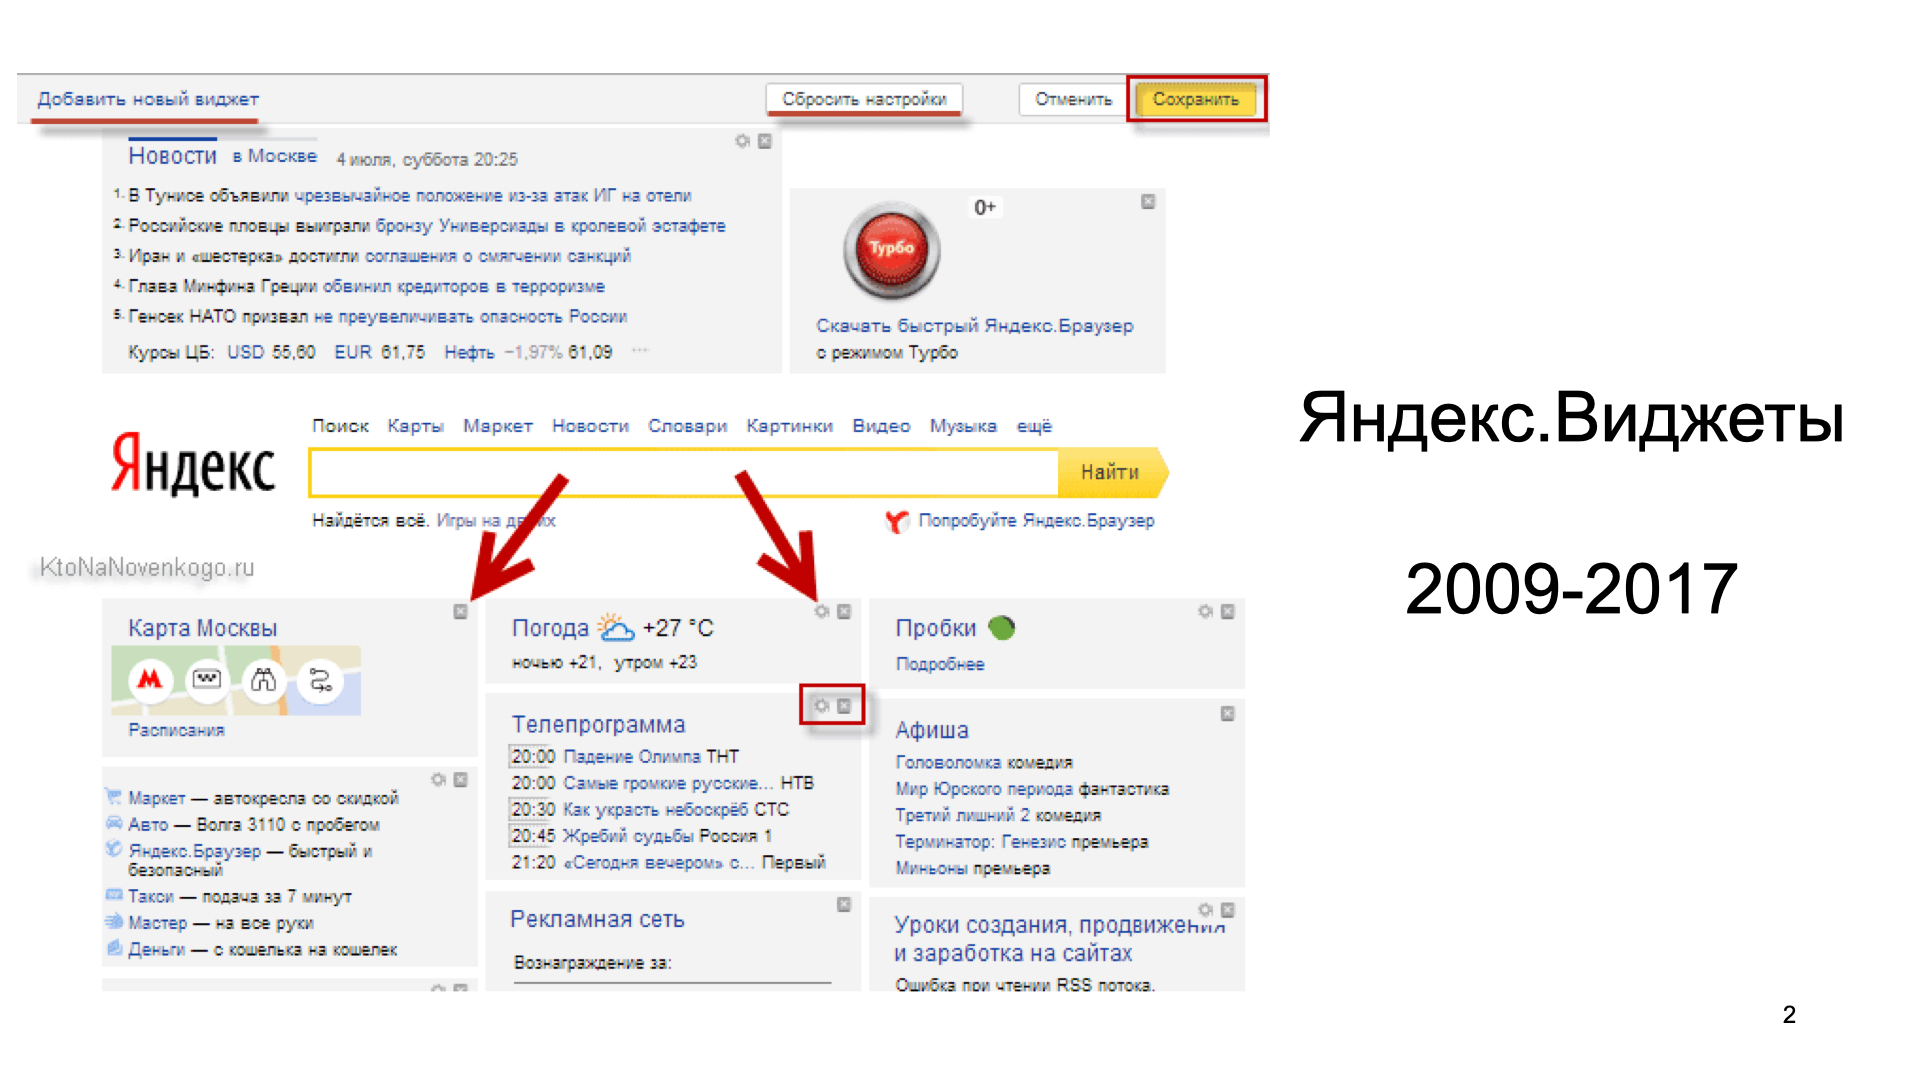 Как сохранить сайт в яндексе. Настройки Яндекса Главная страница. Как настроить главную страницу Яндекса. Добавить Виджет на главную страницу Яндекса.